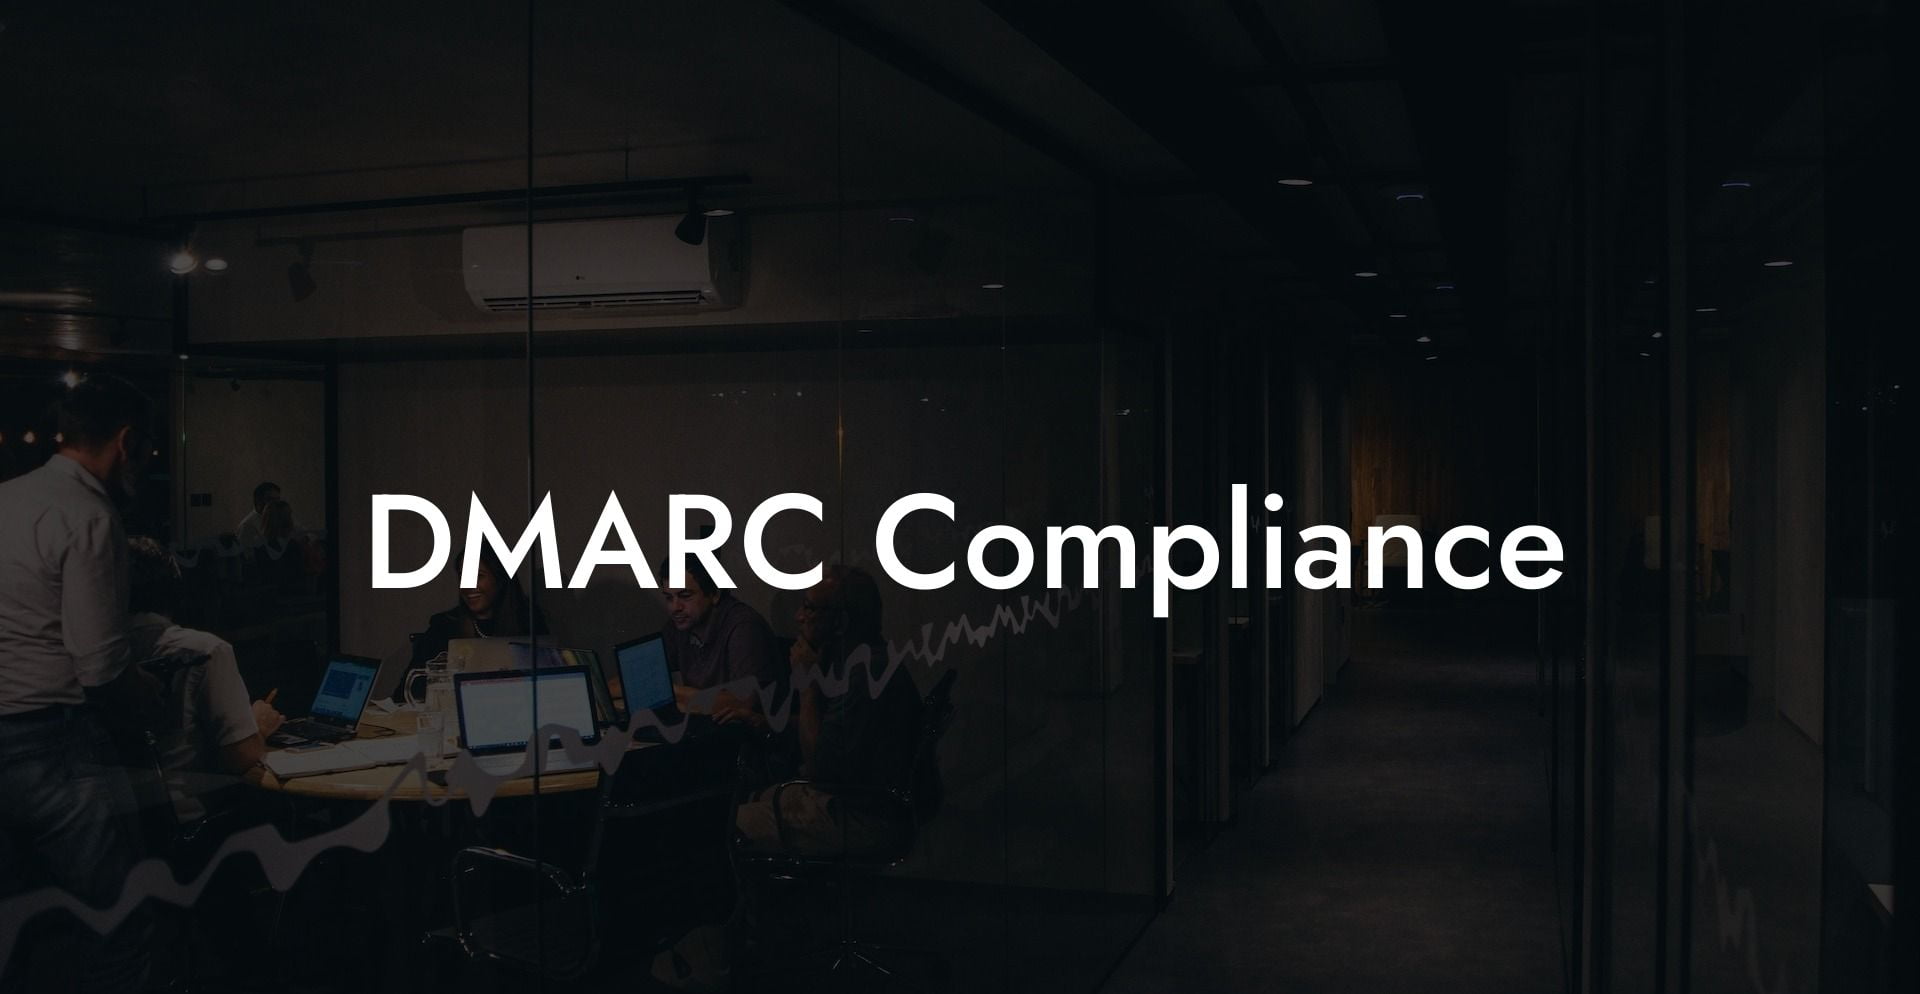 DMARC Compliance